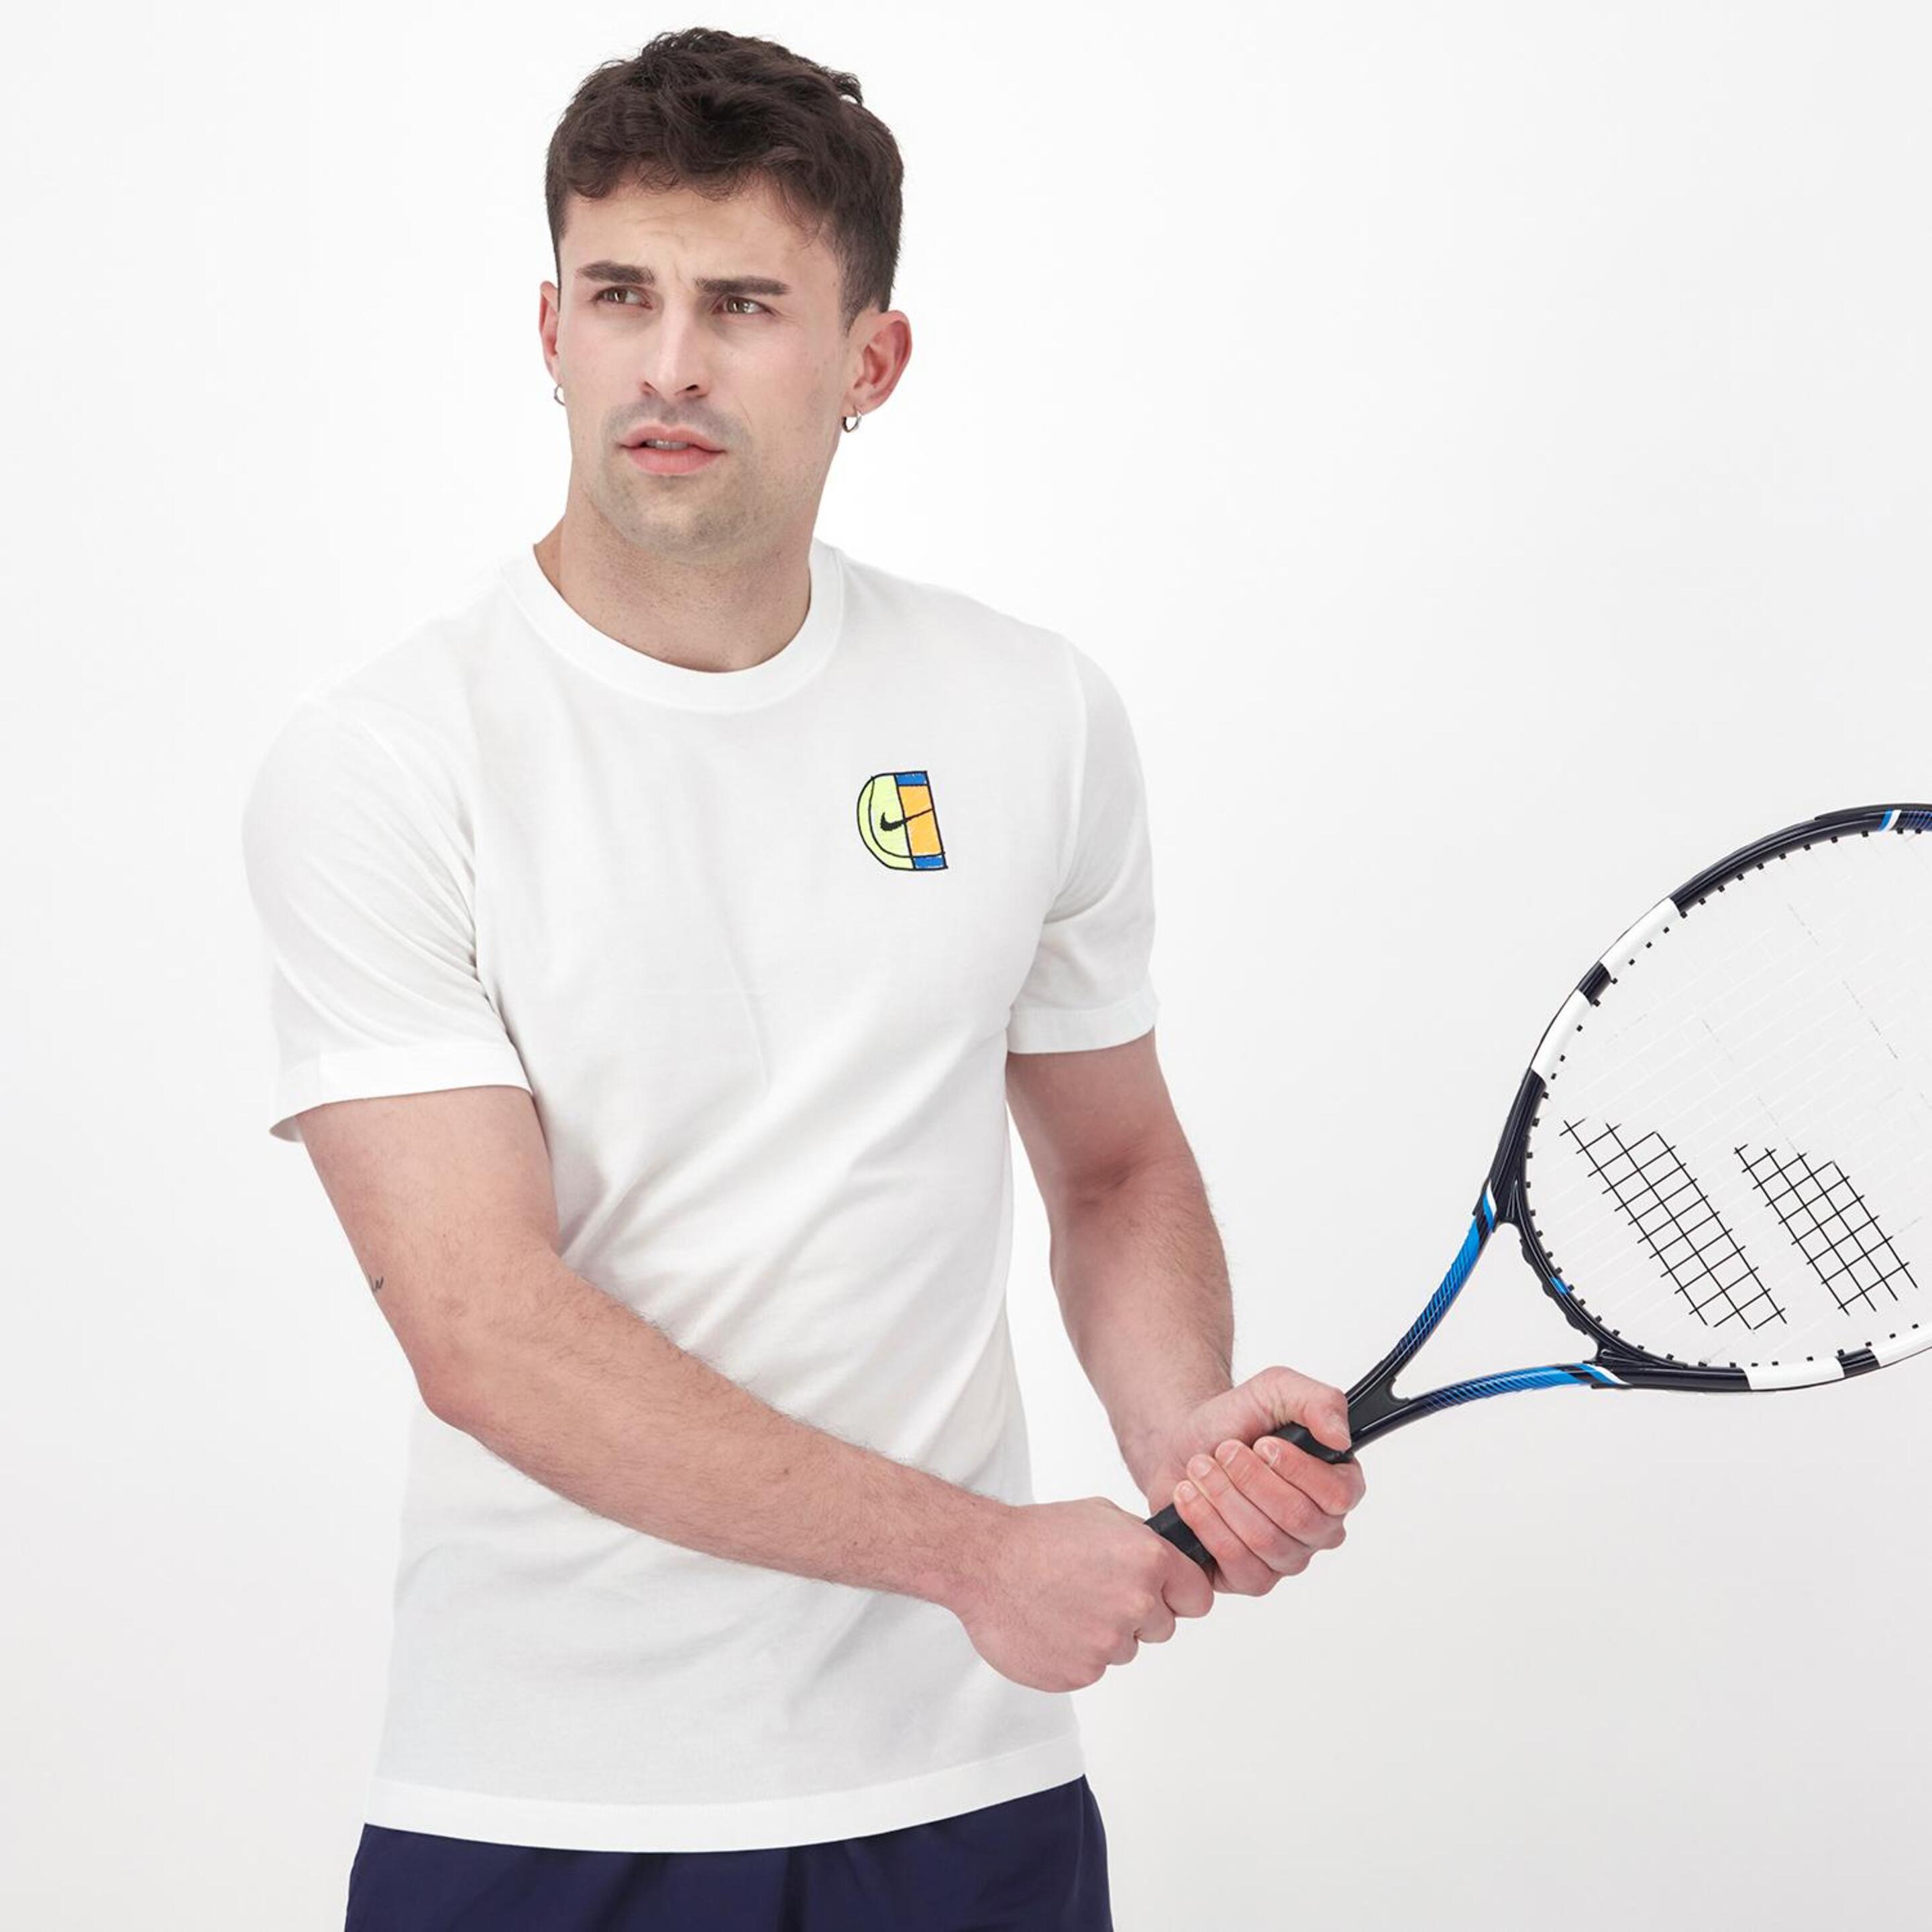 Nike Open - blanco - Camiseta Tenis Hombre